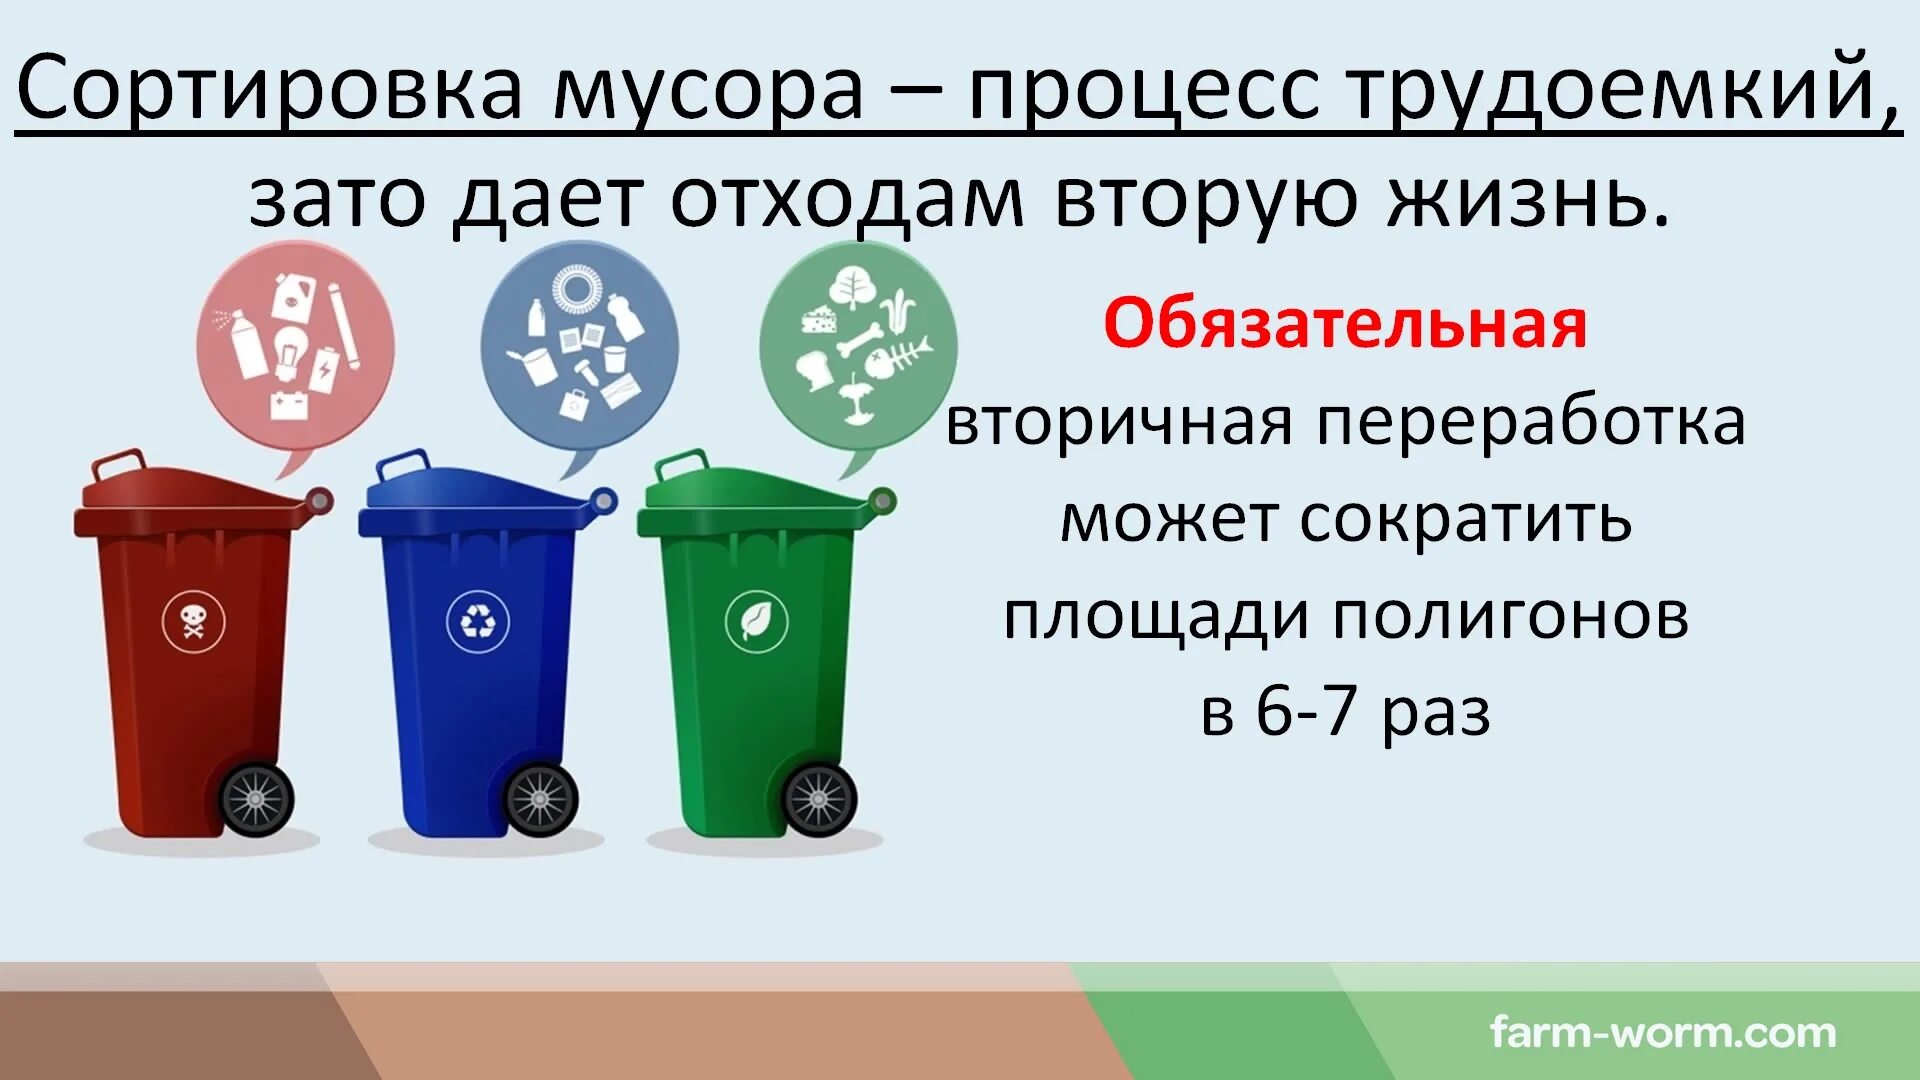 Для сбора отходов а допускается использование. Классификация утилизации отходов. Типы бытовых отходов. Типы мусорных отходов.